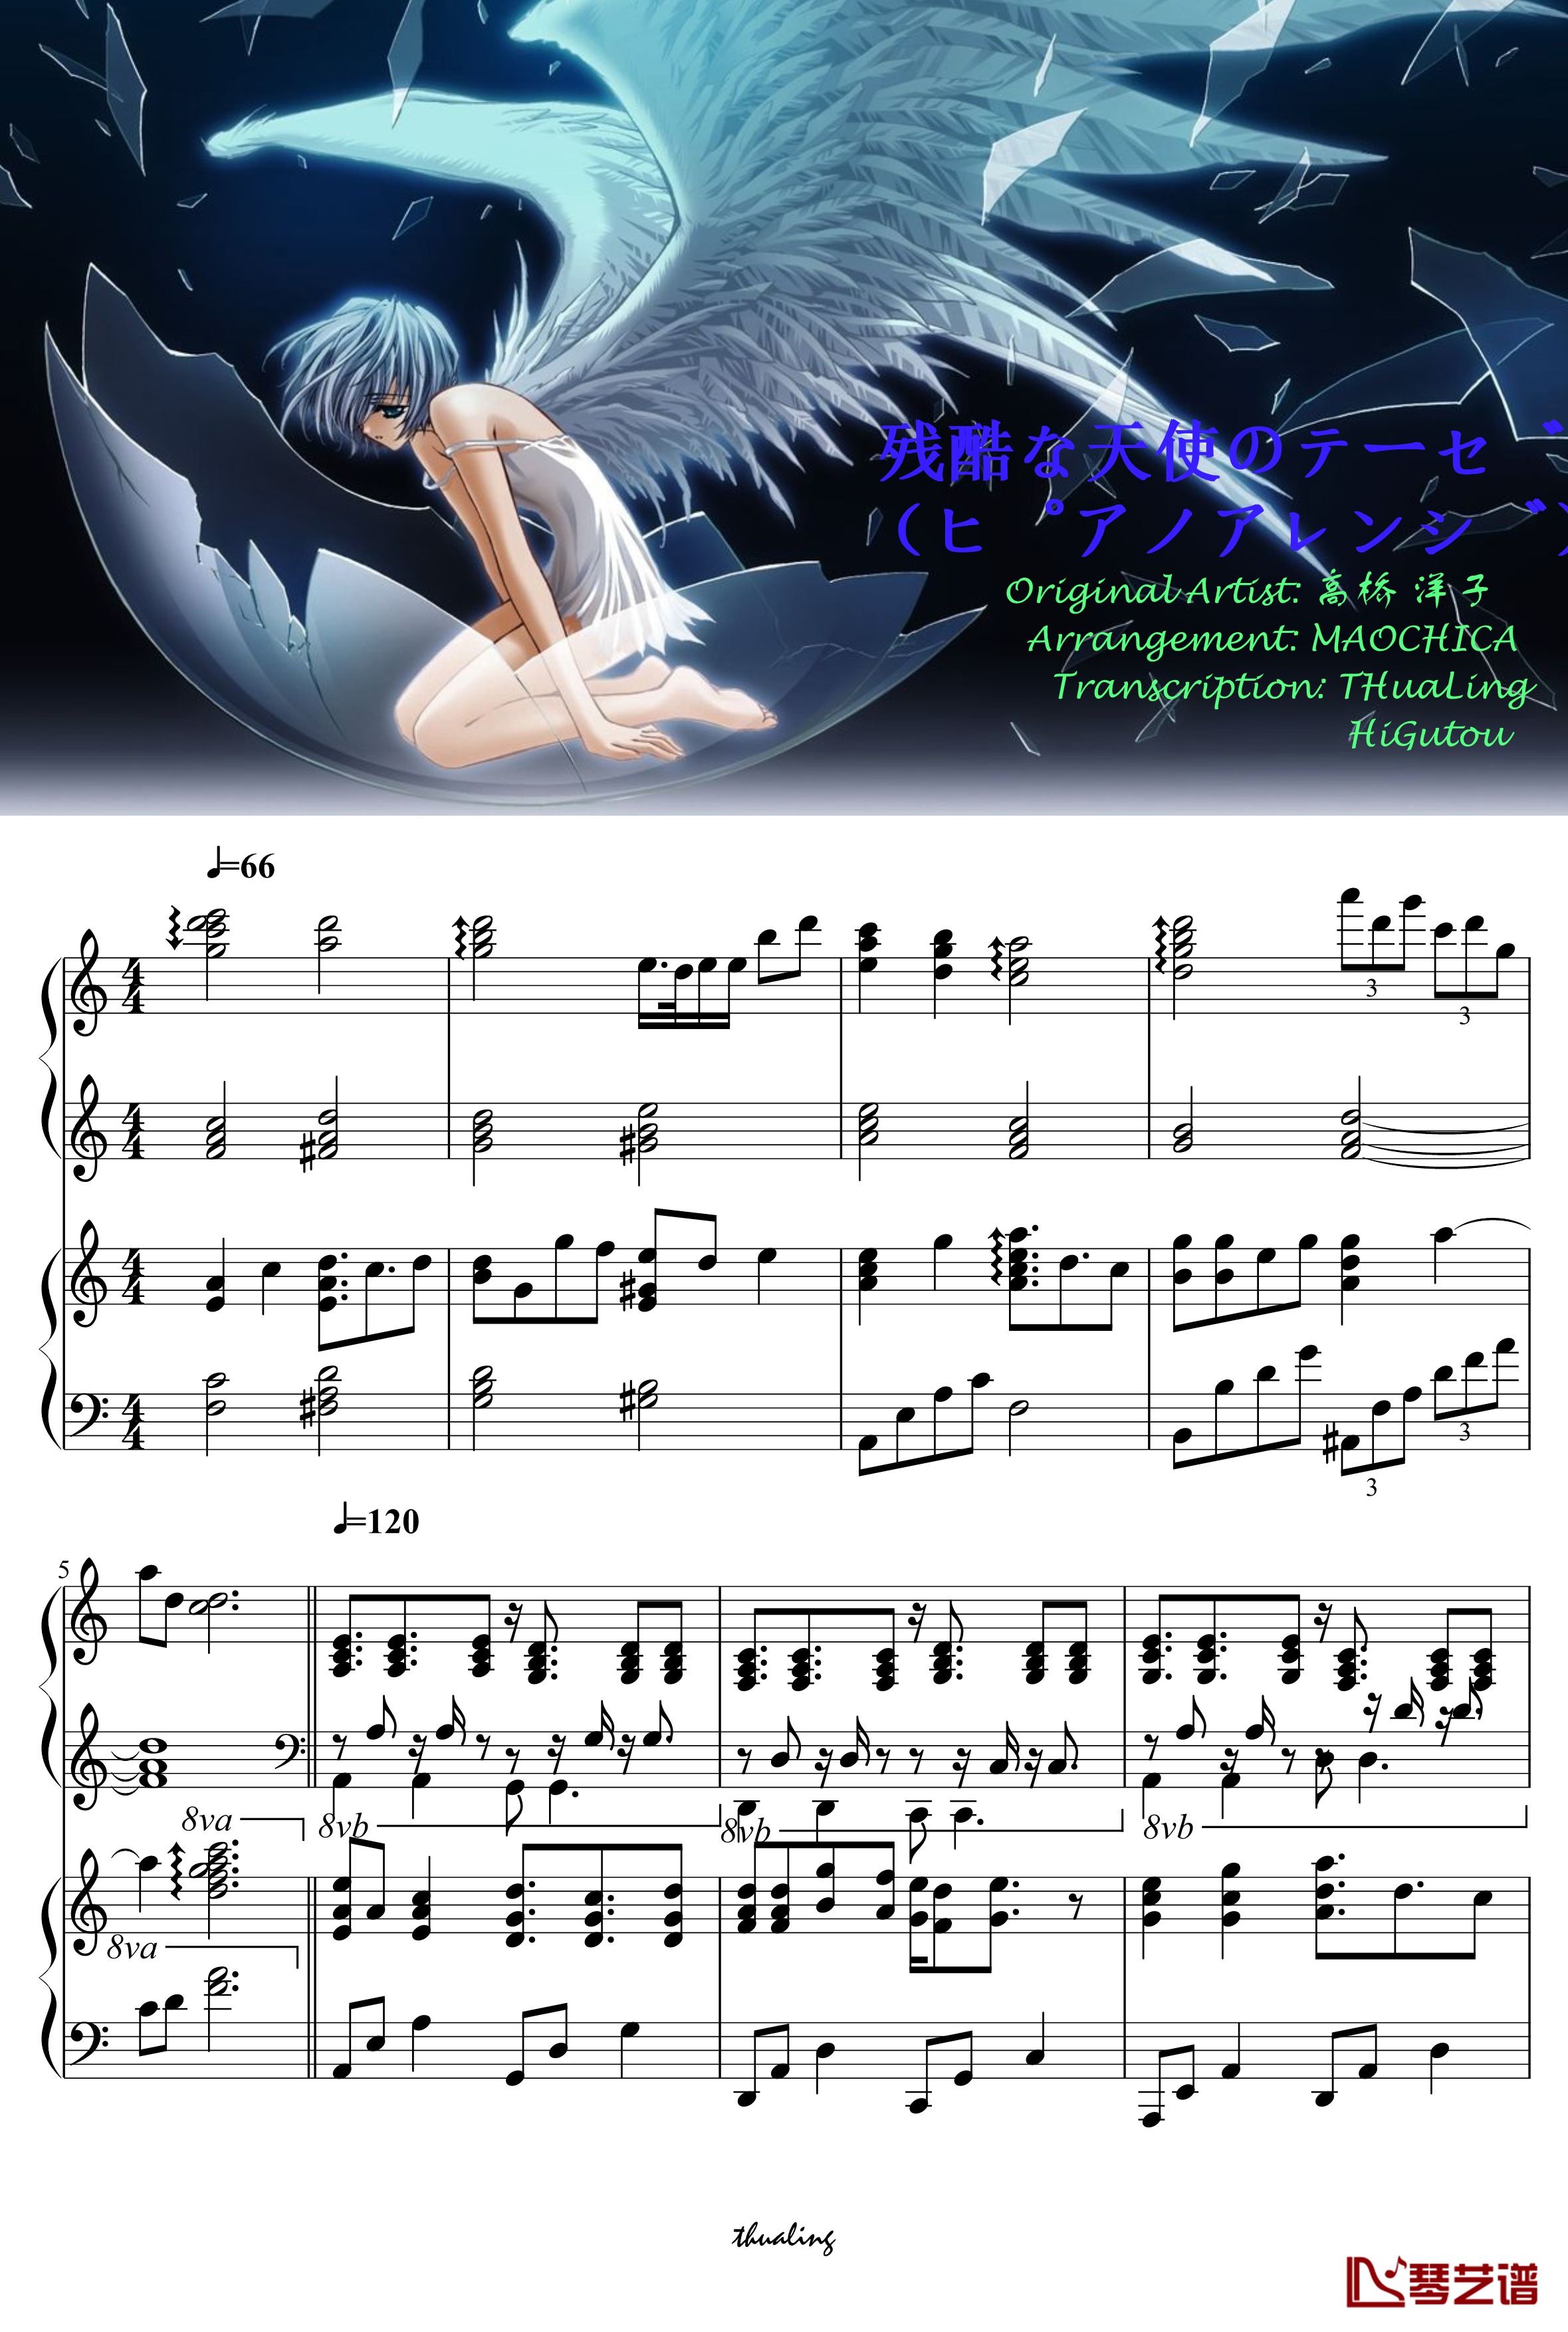 残酷天使的行动纲领钢琴谱-双钢琴爵士版-EVA OP1